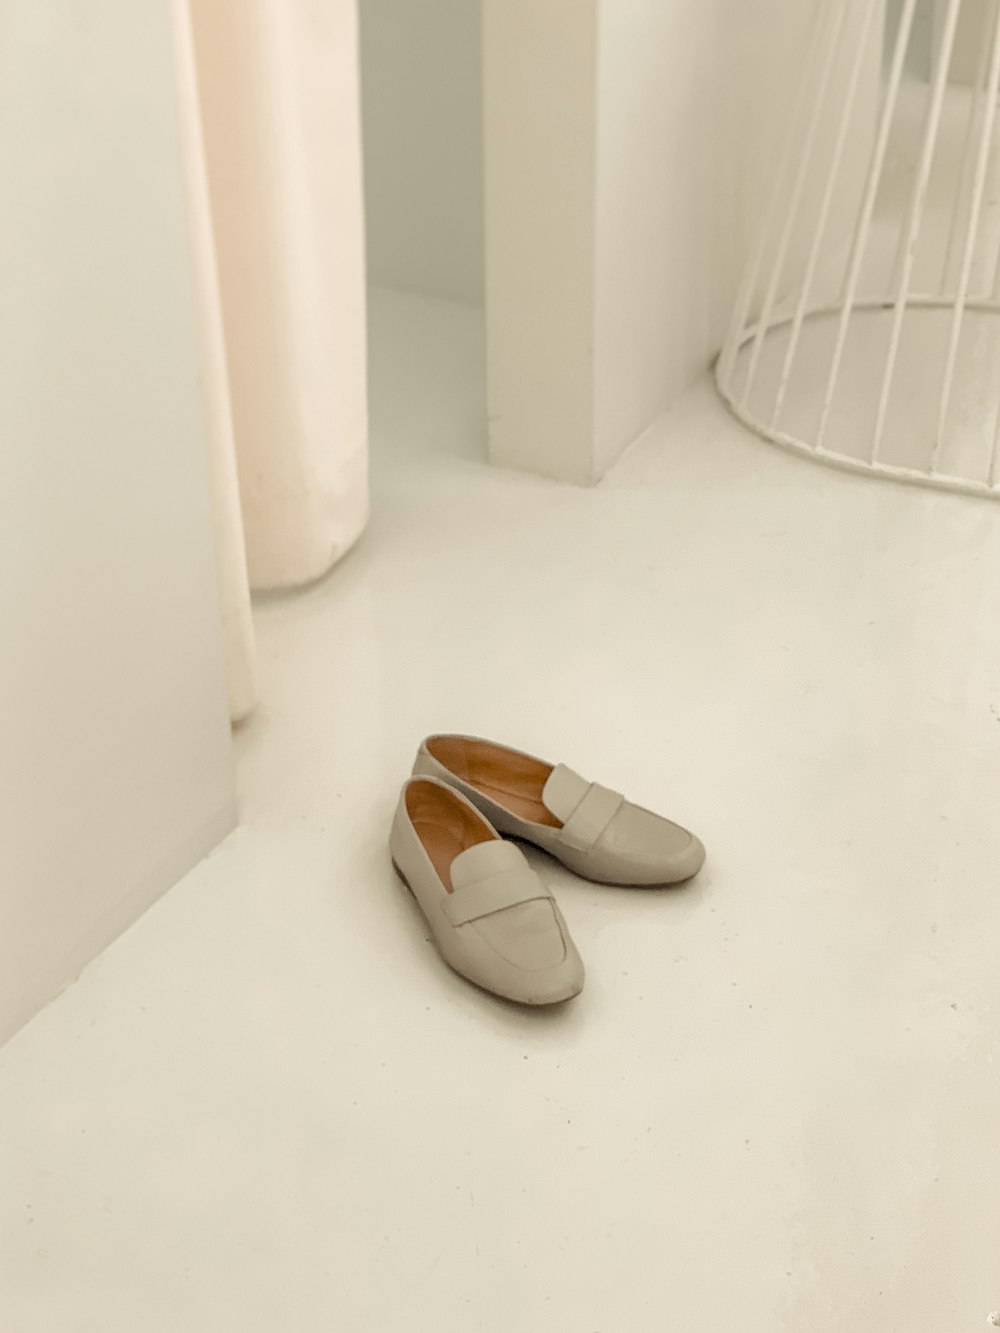 scarpe grigie in una stanzafotografia ravvicinata